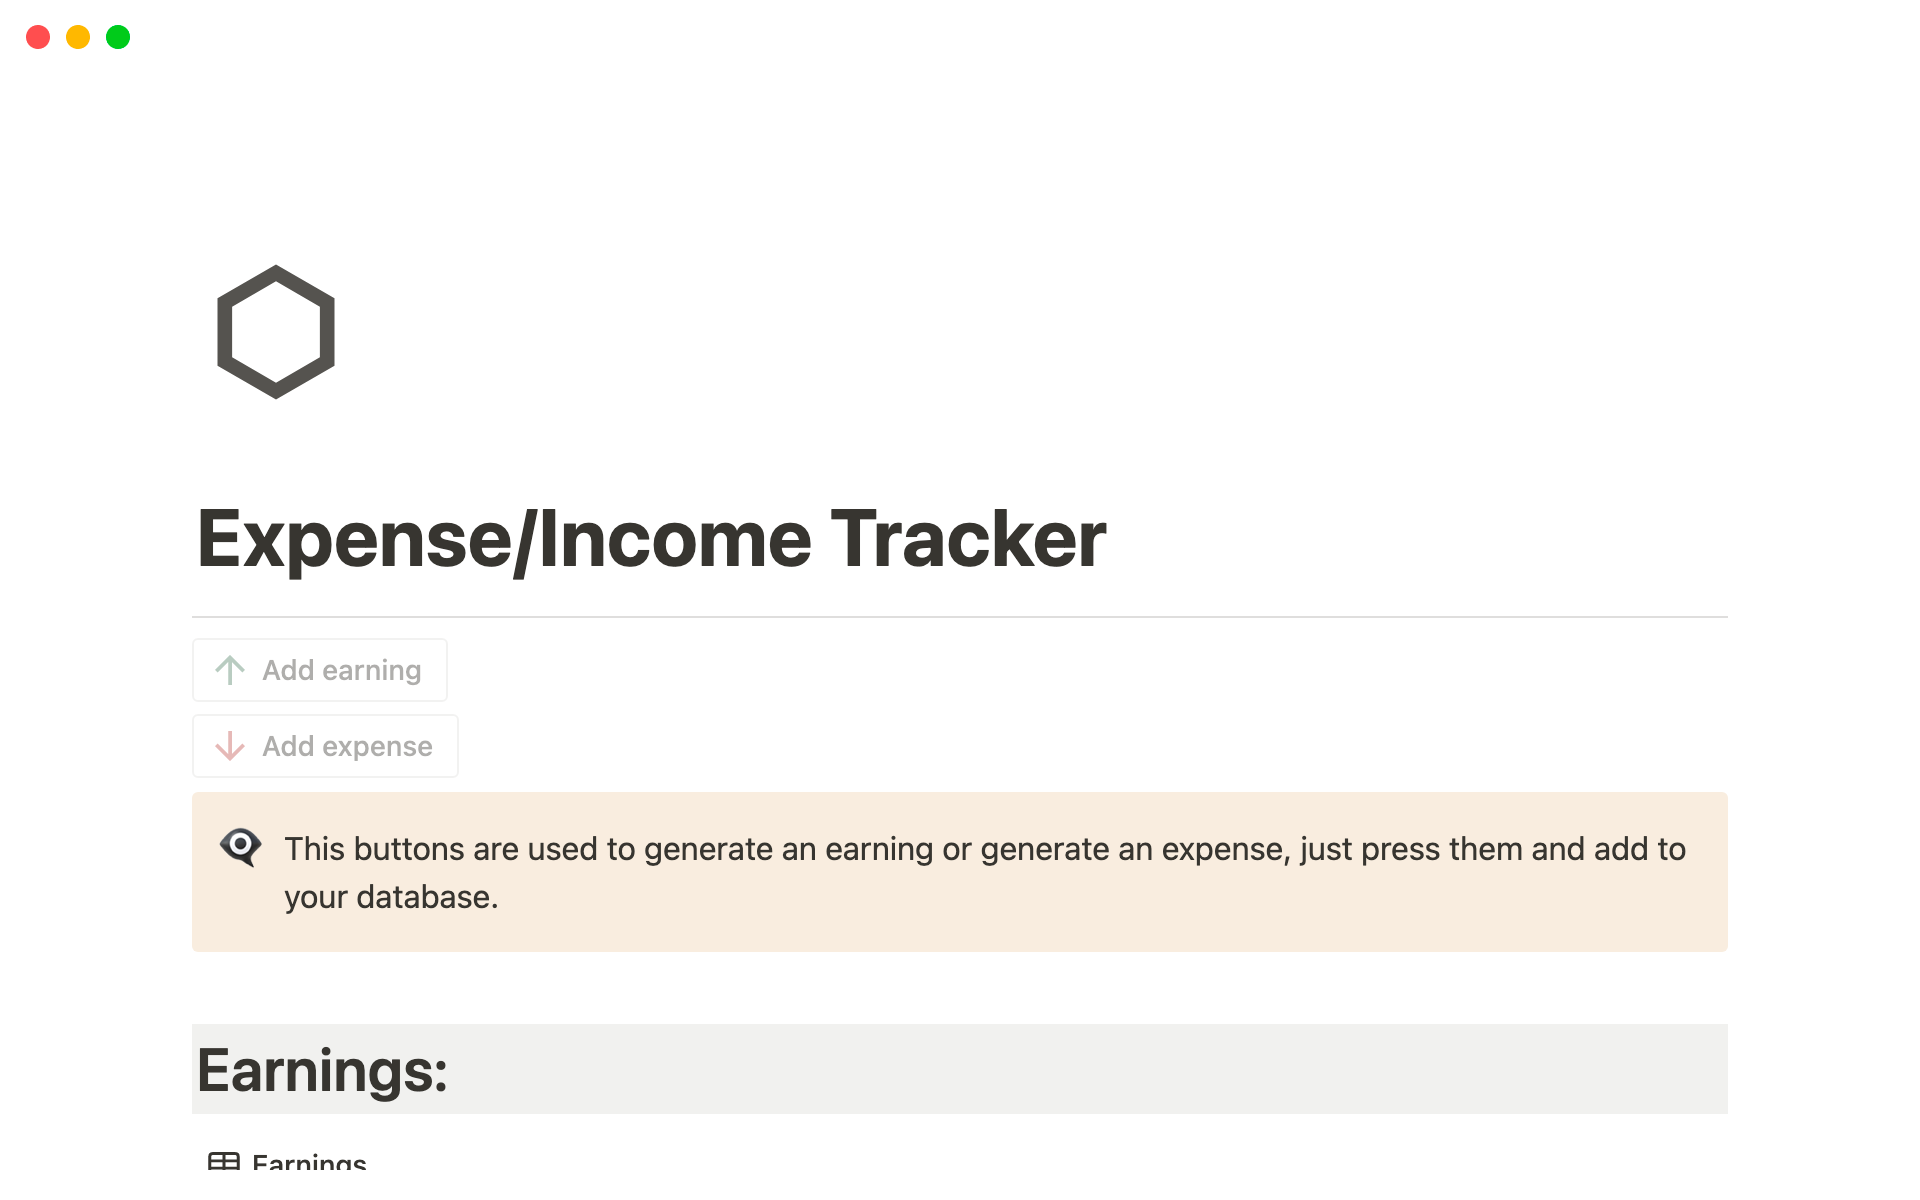 Uma prévia do modelo para Expense/Income tracker